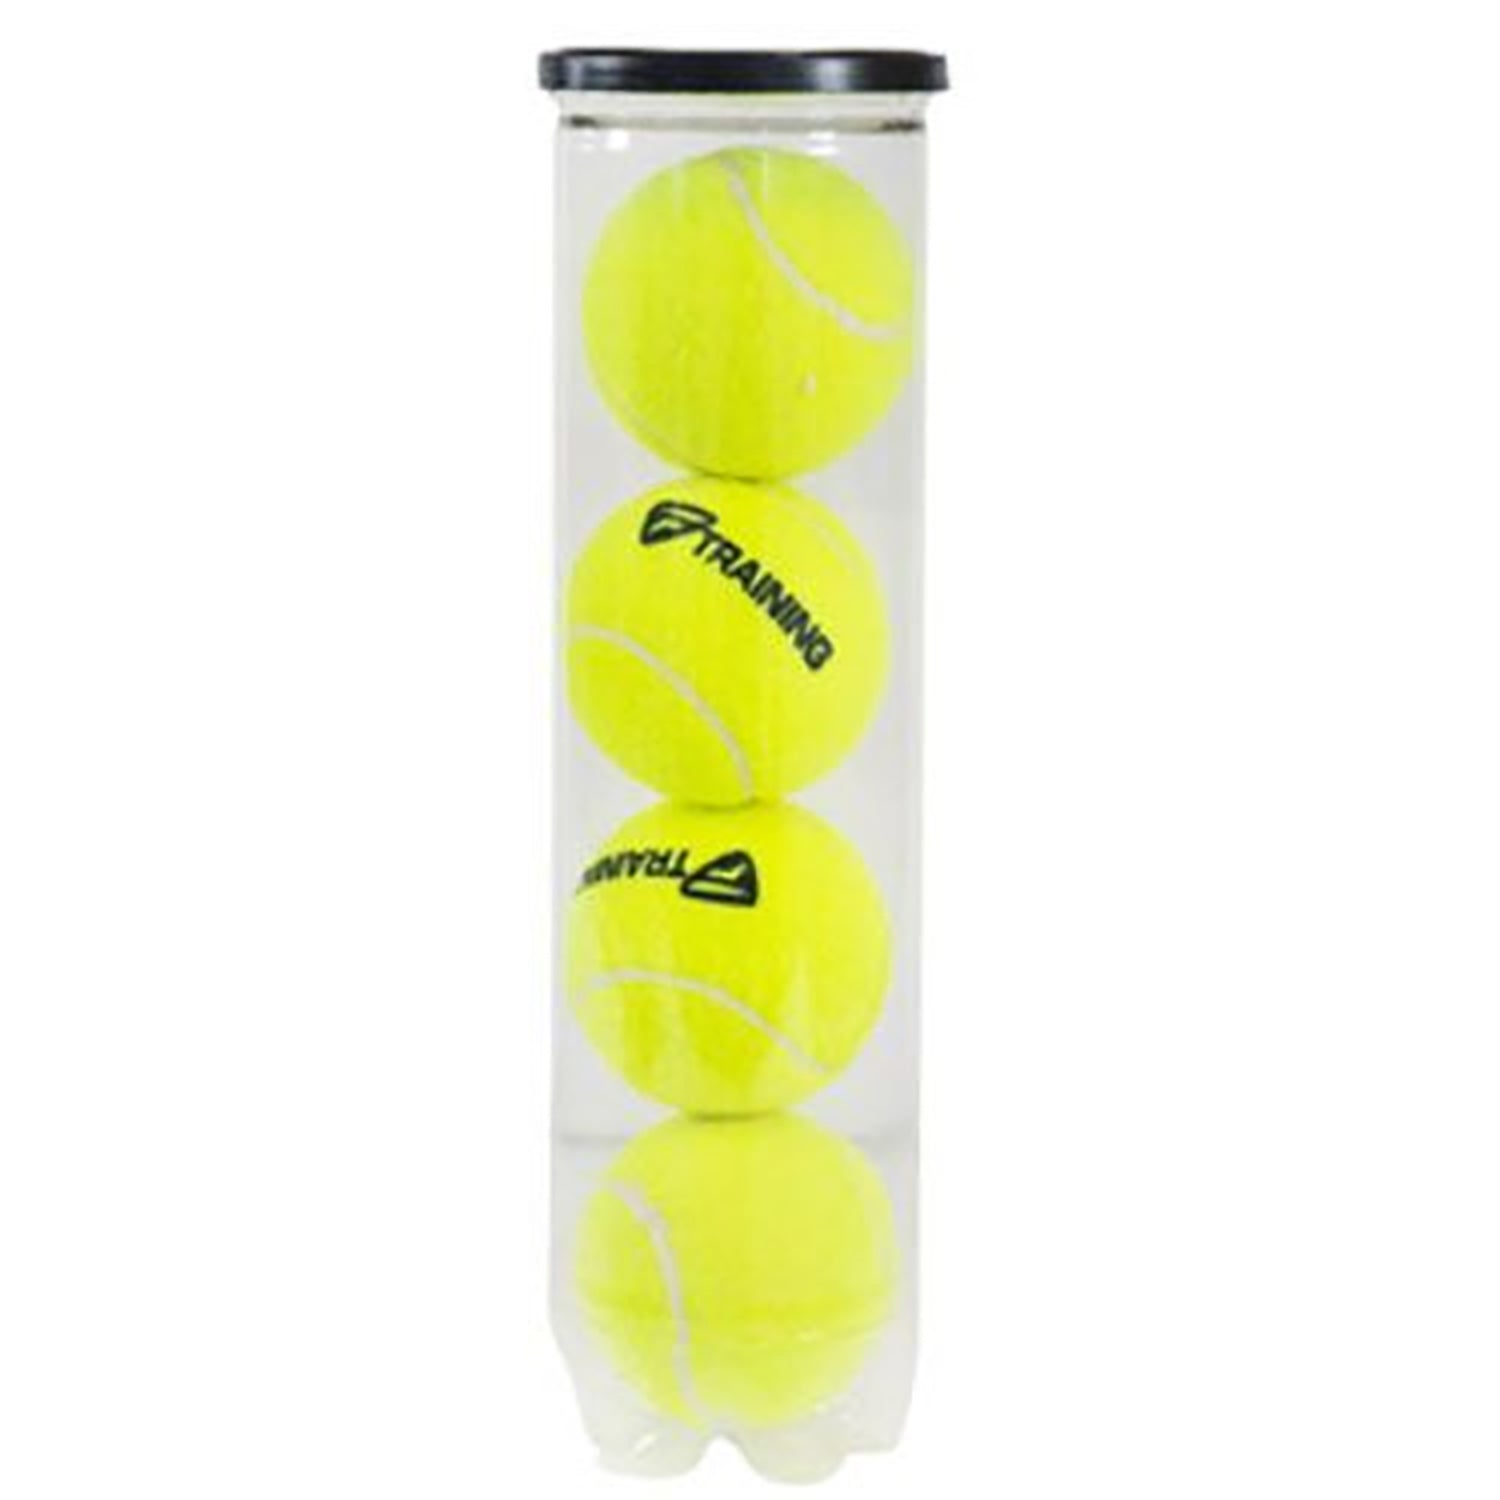 Tecnifibre Training New Tennis Balls Dozen, 3 Cans (4 Ball Per Can) - Best Price online Prokicksports.com